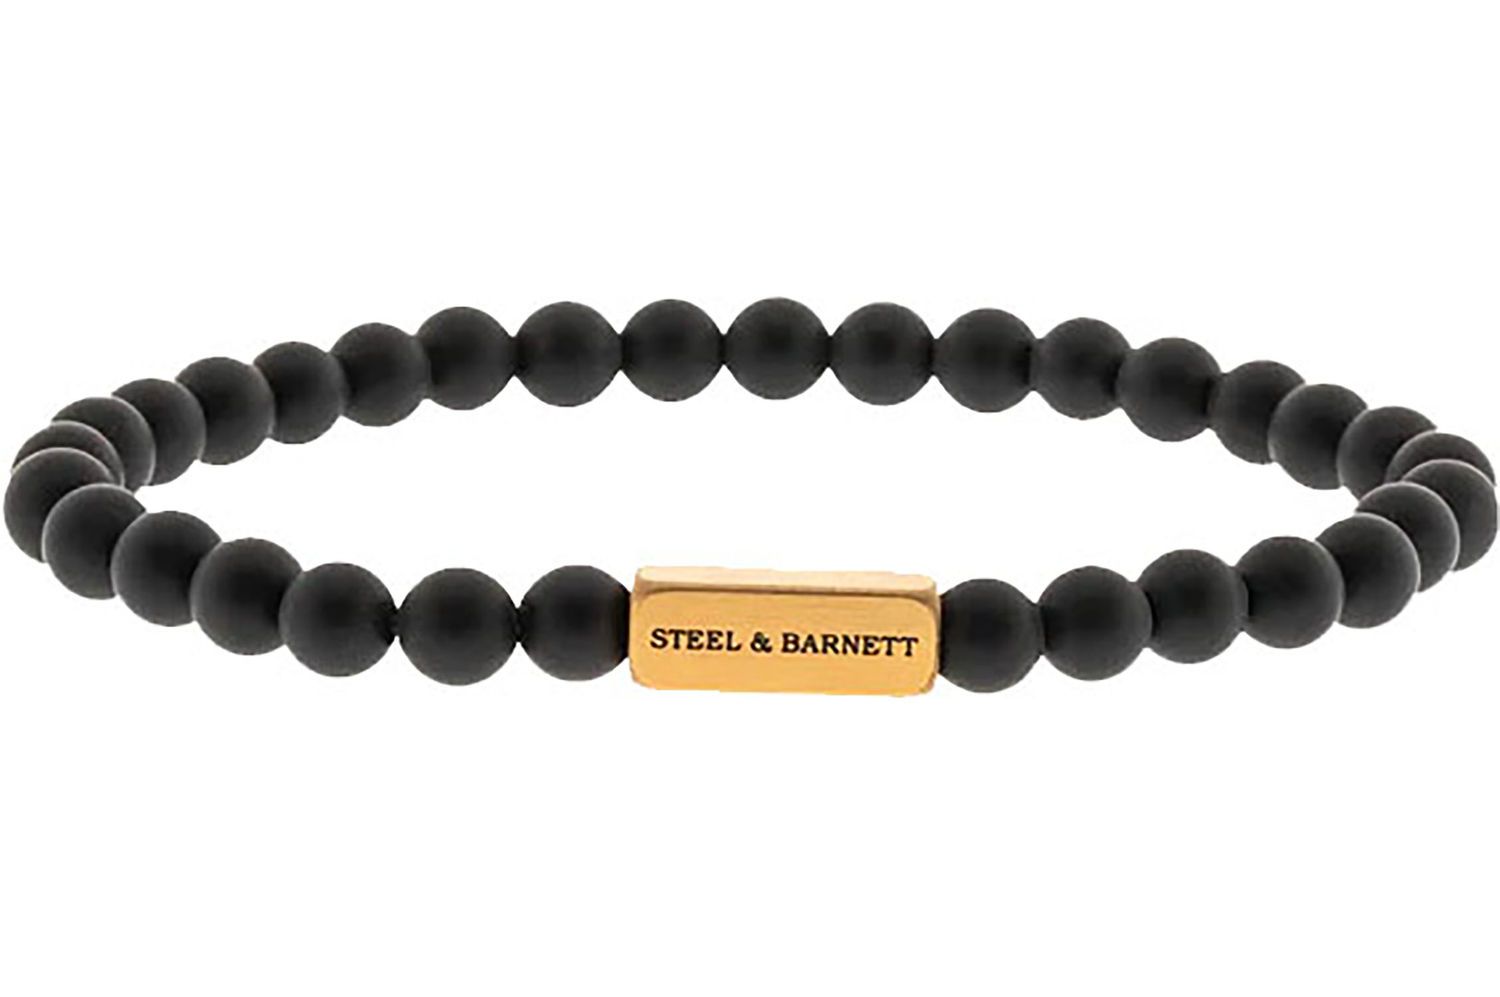 Steel & Barnett Armband Goud/Zwart